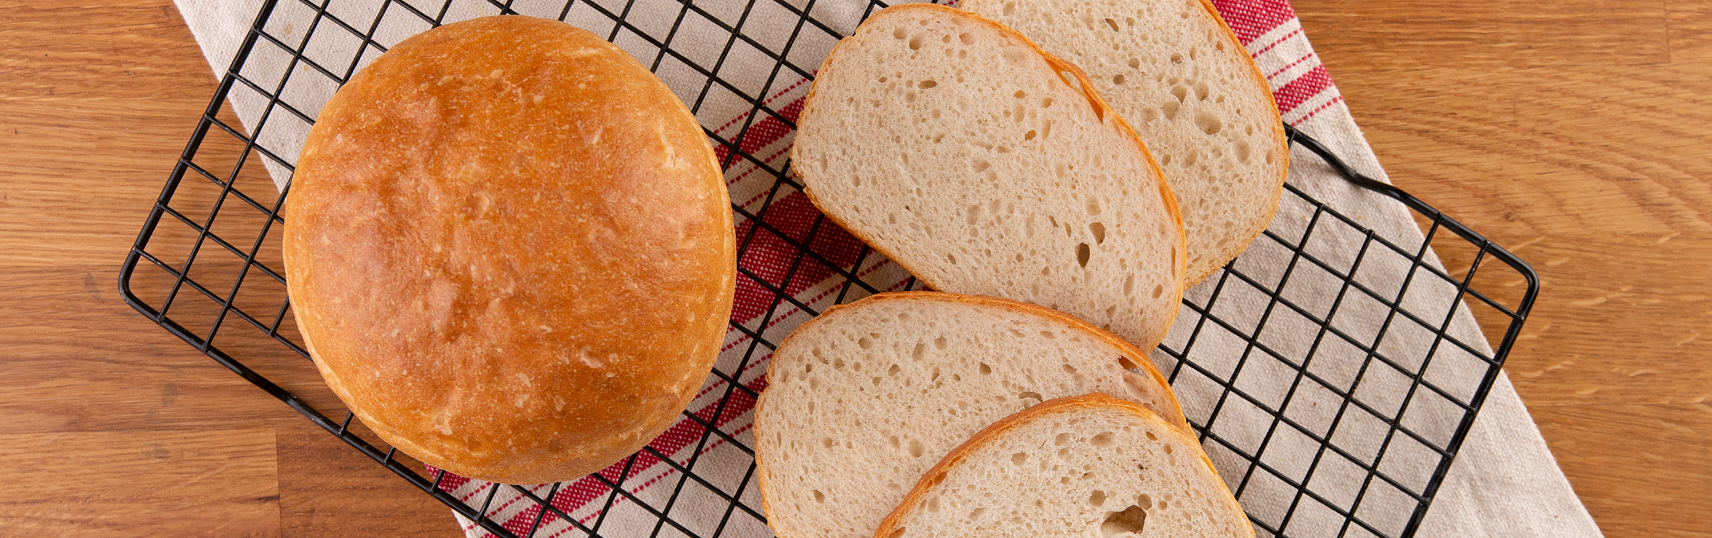 Пшеничный хлеб на сметане